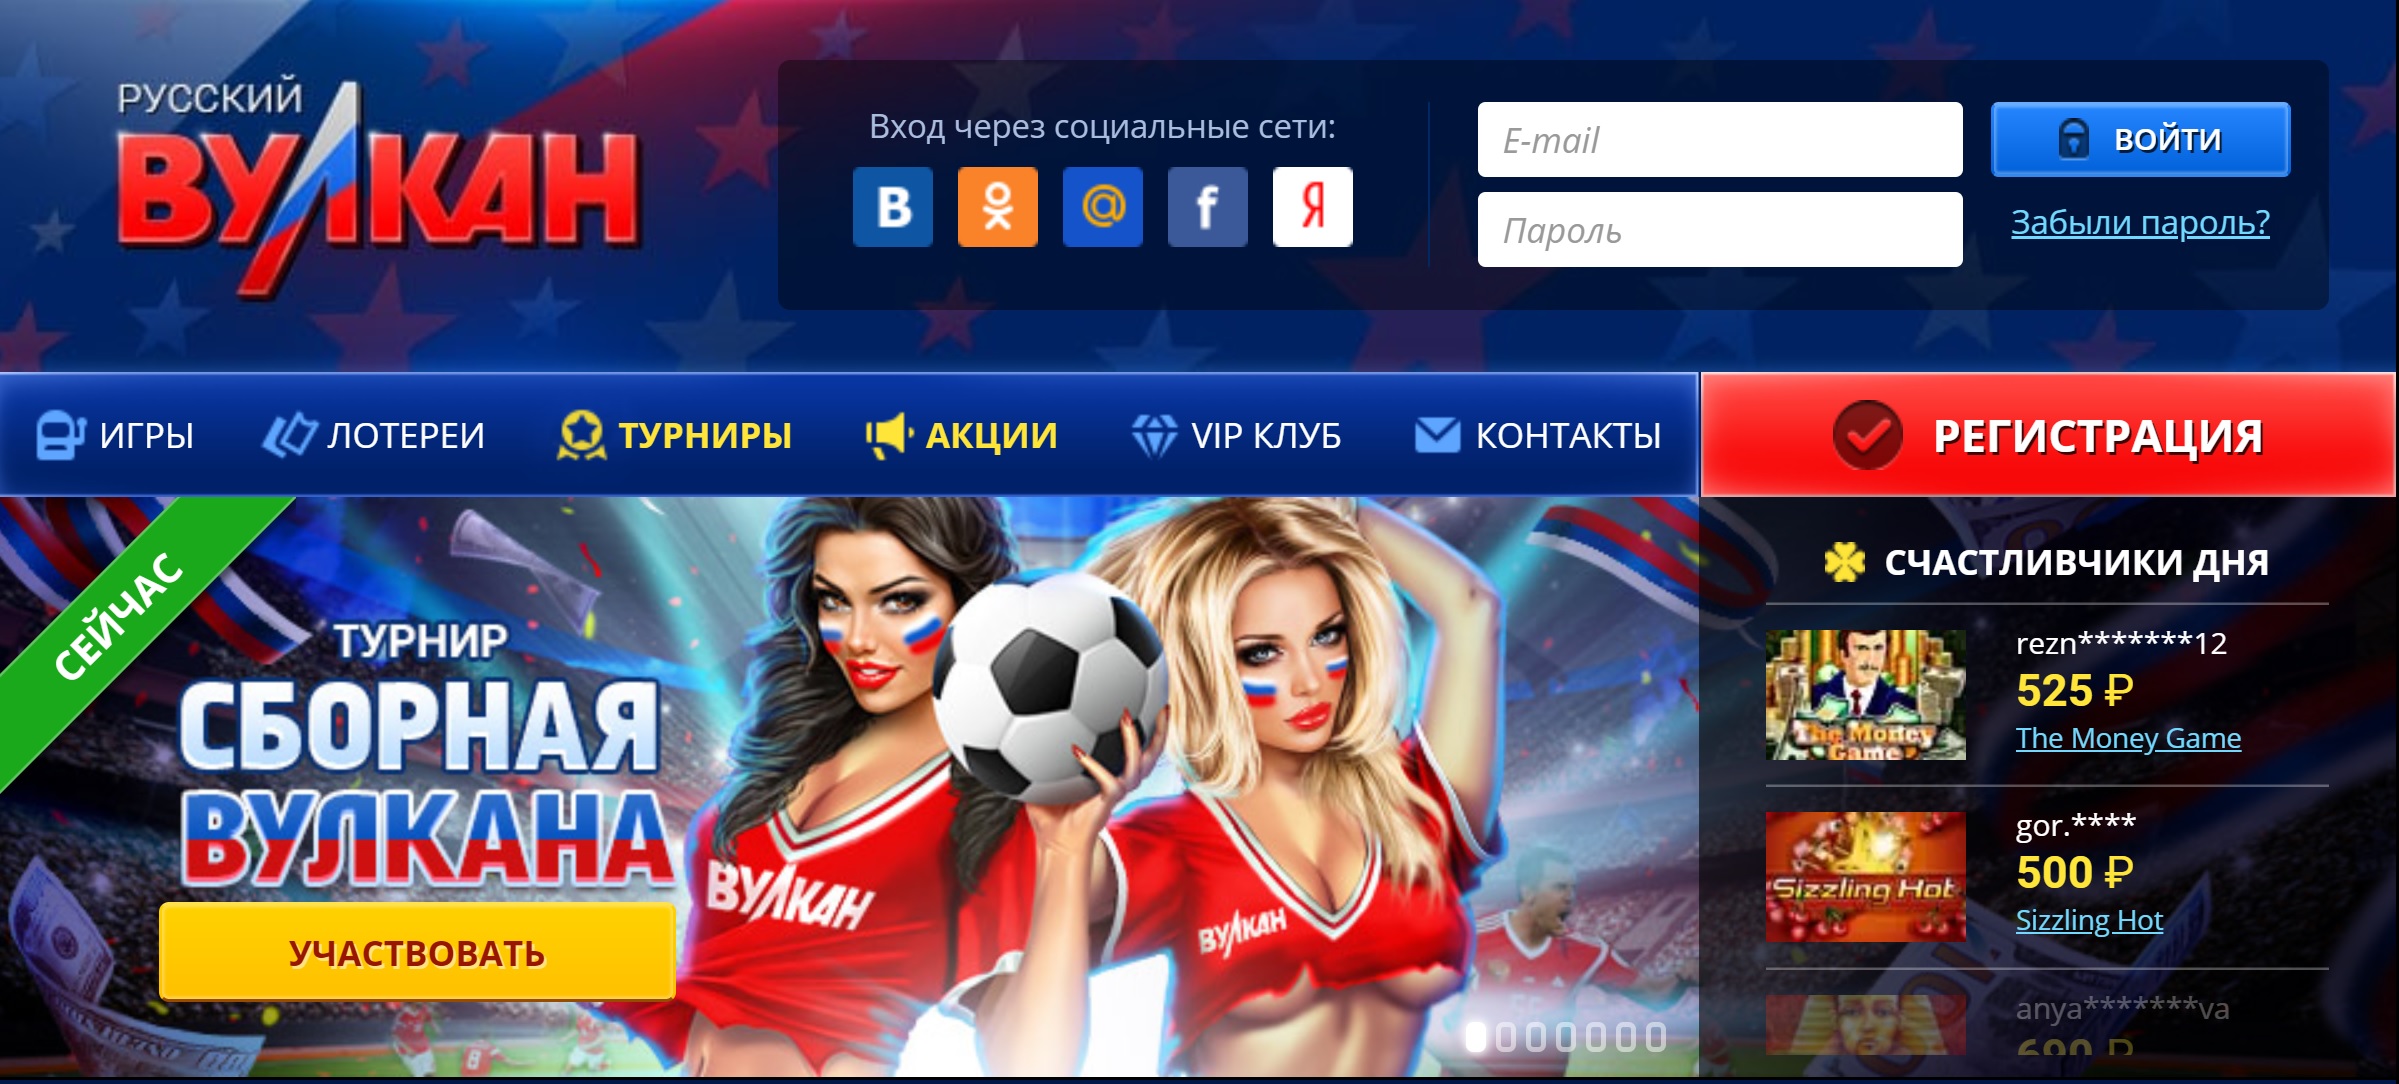 Отзывы о онлайн казино русский вулкан рейтинг компаний букмекеров